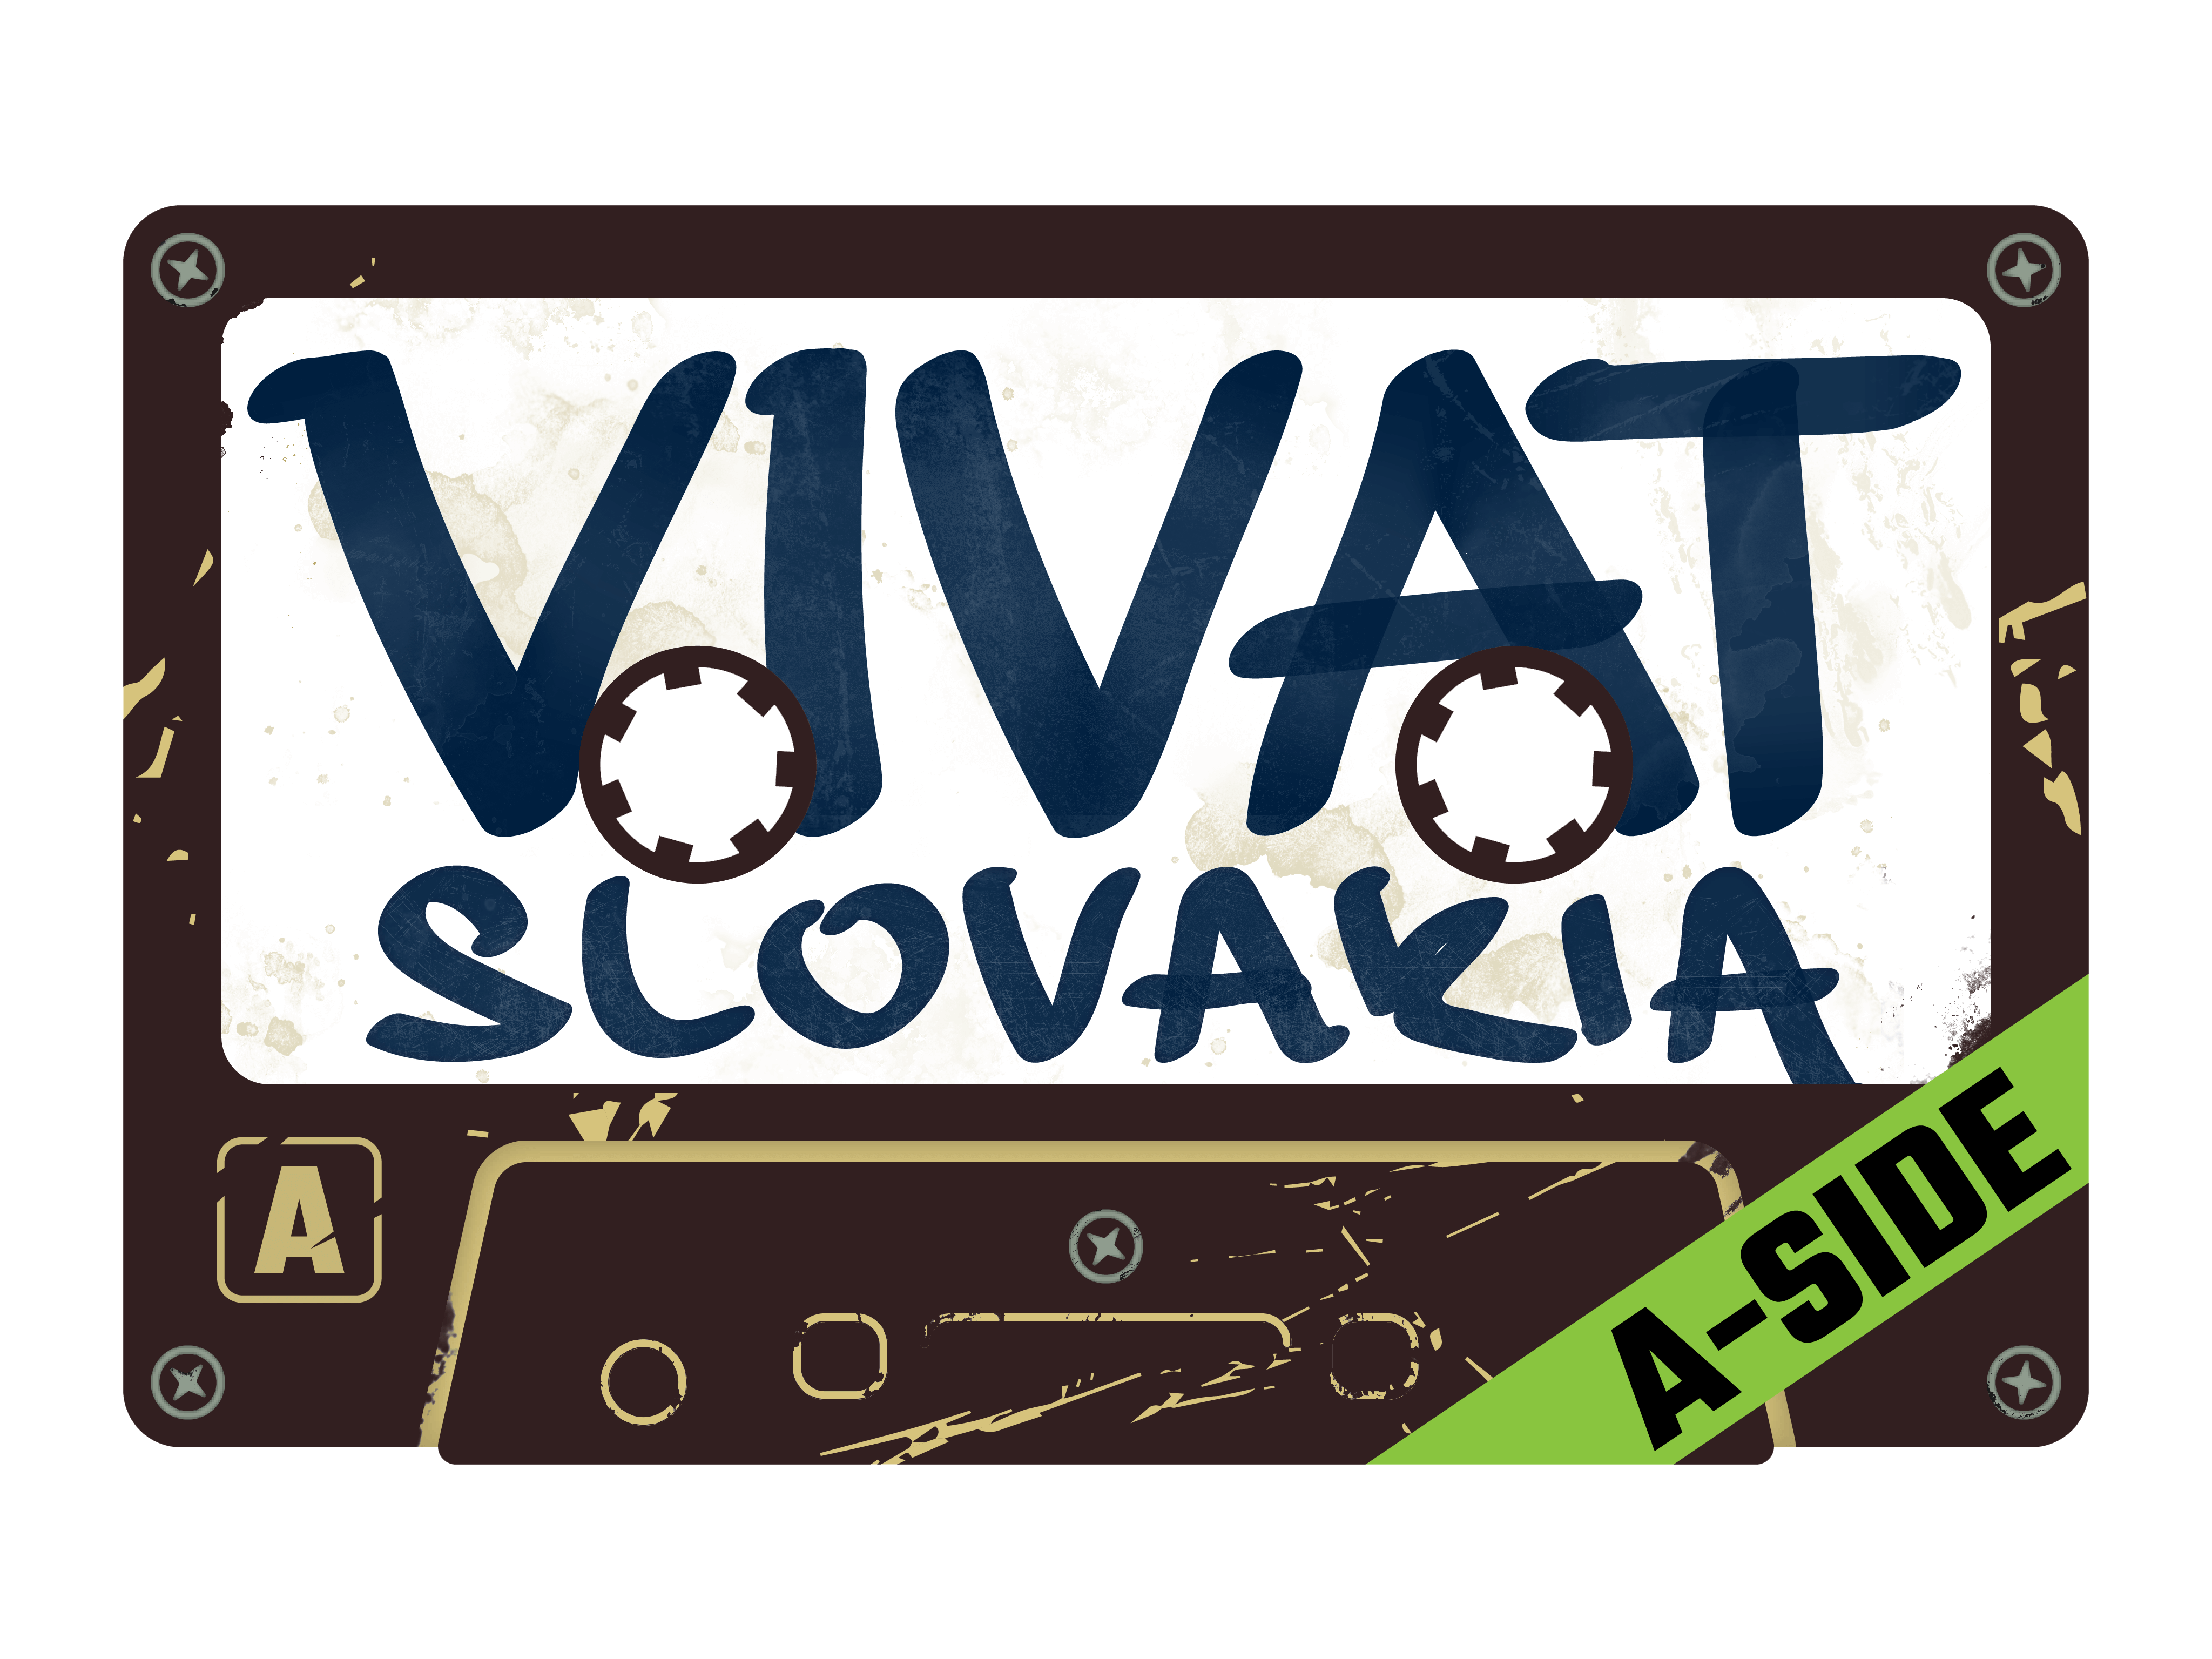 Vivat Slovakia A-side logo